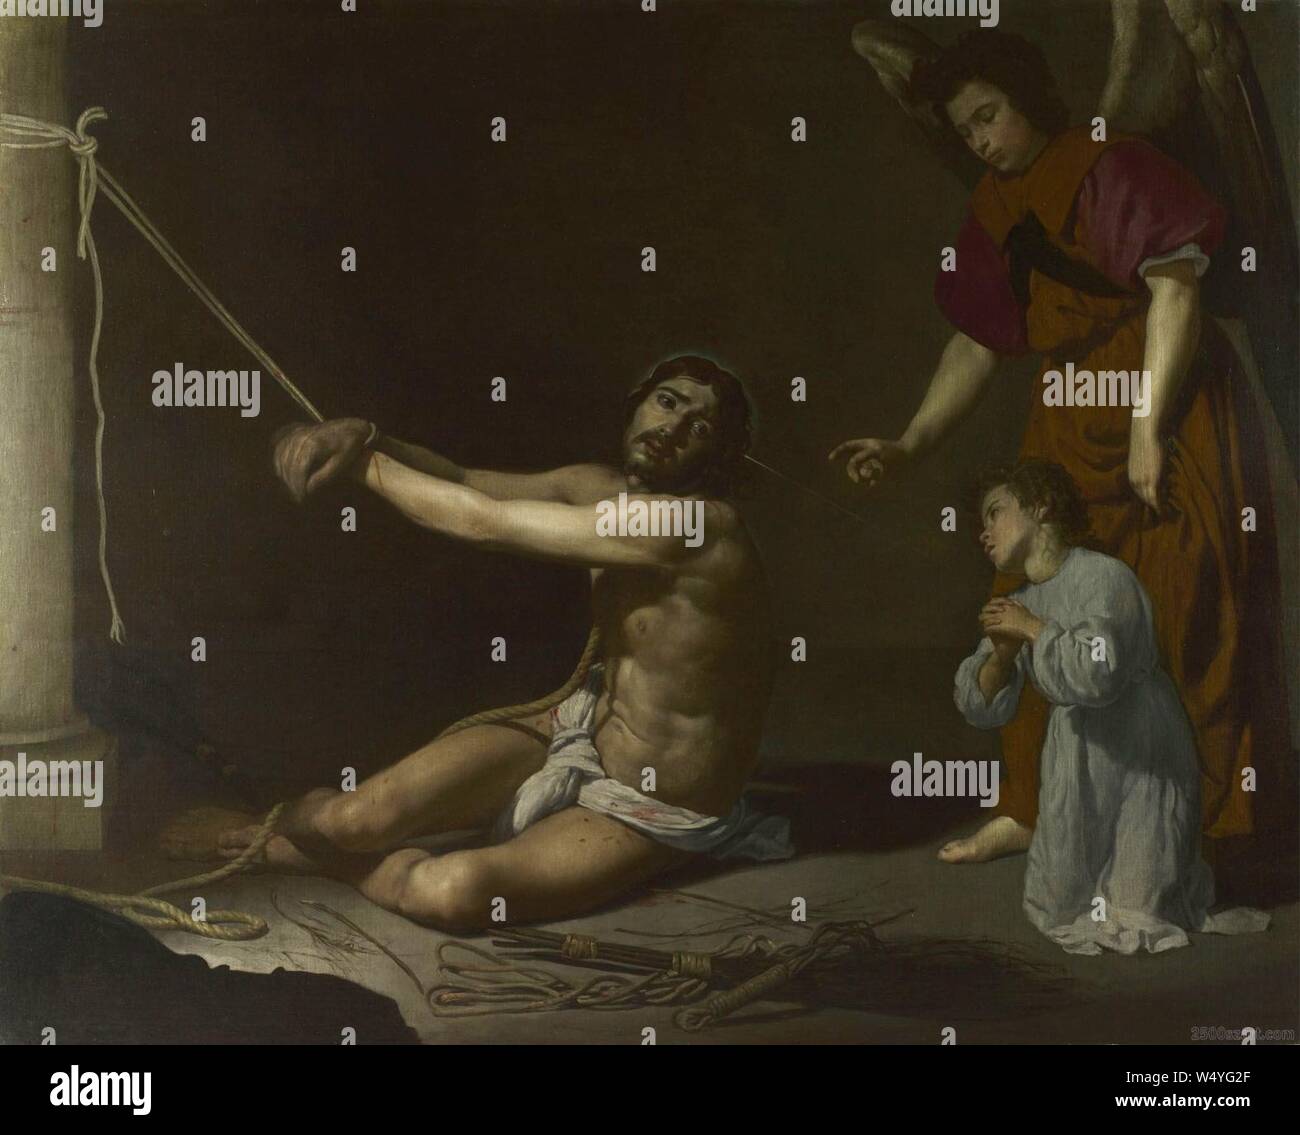 Cristo después de la flagelación y el alma cristiana 2, by Diego Velázquez. Stock Photo